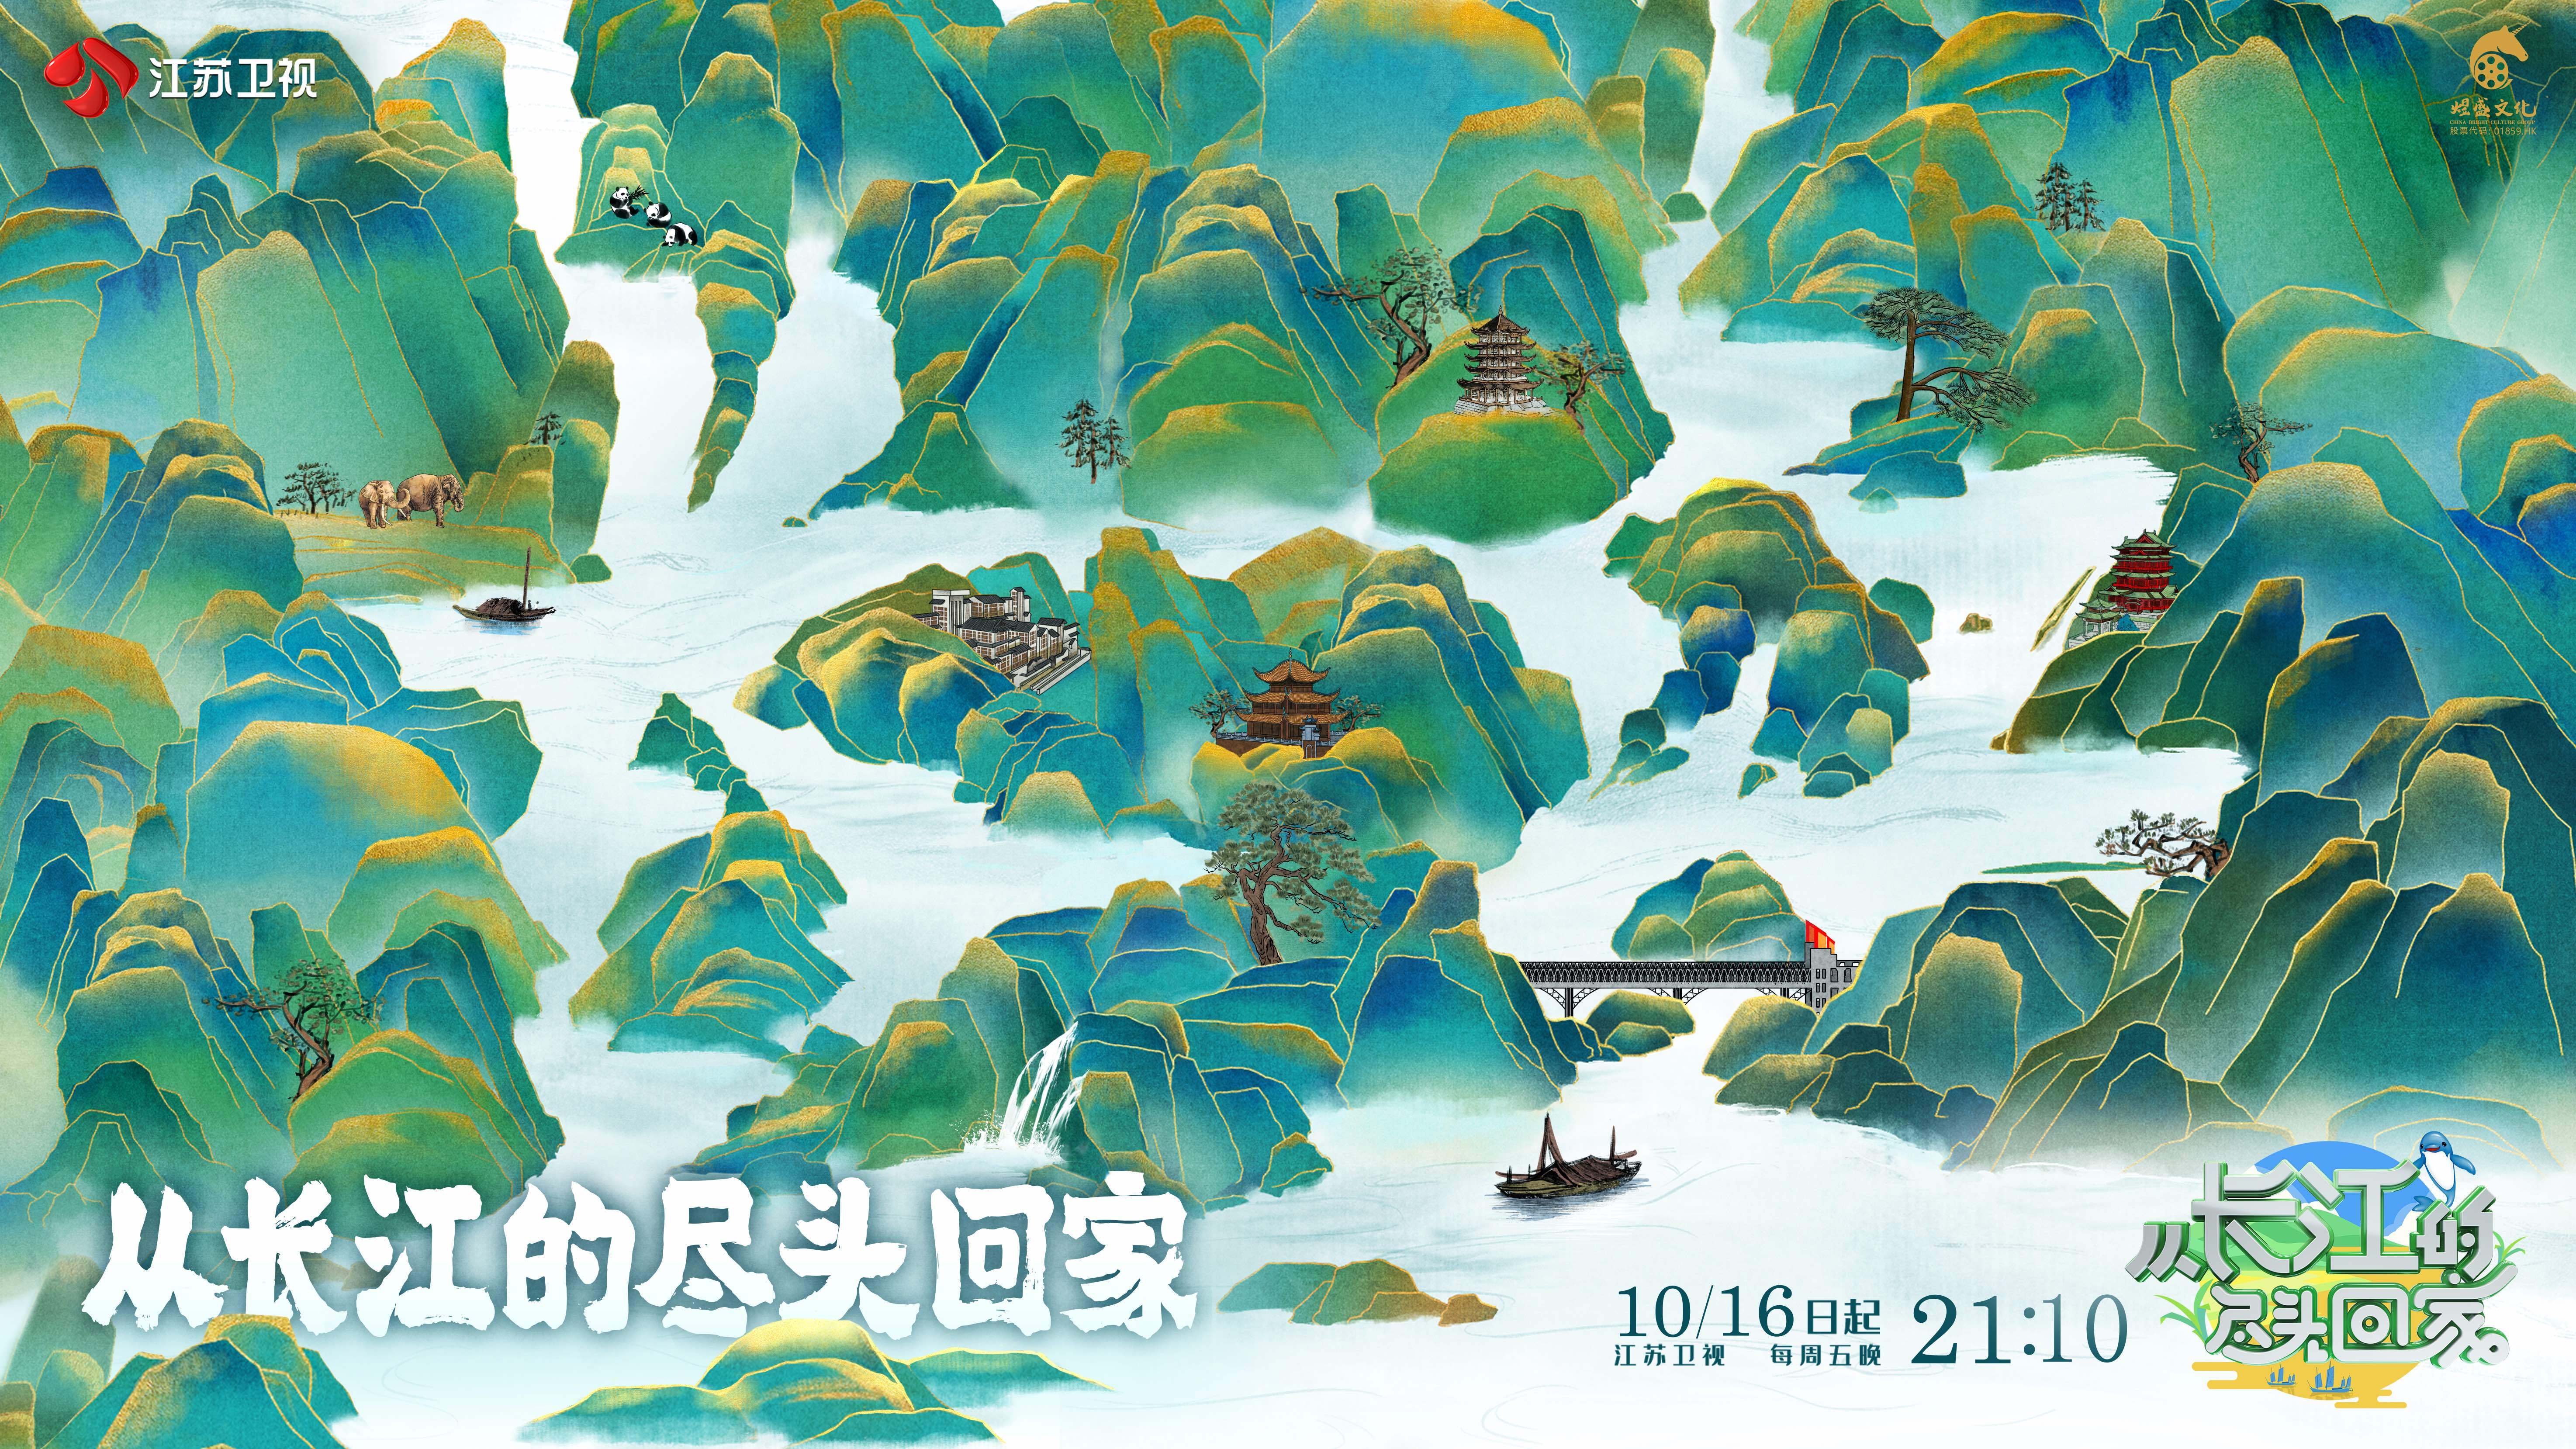 《从长江的尽头回家》下周五开播 全新公益探访节目带您遍览长江好景